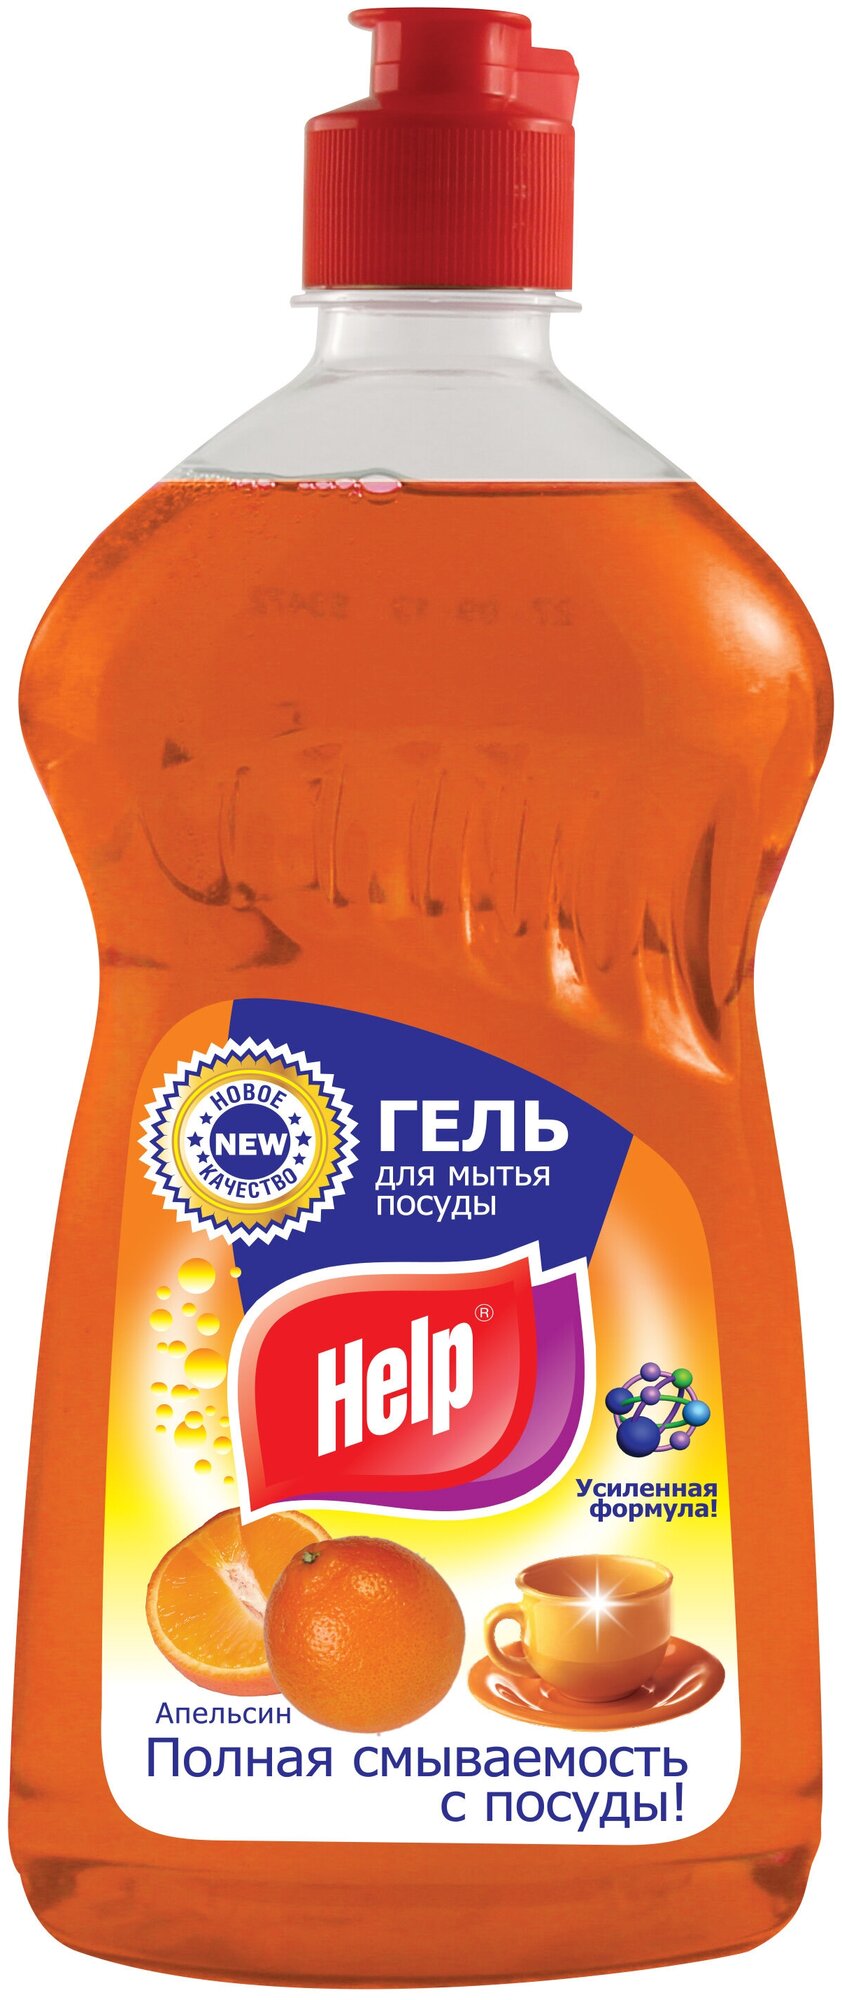 Альфатехформ Моющее средство для посуды "Help" (Хелп) апельсин 500мл./Альфатехформ